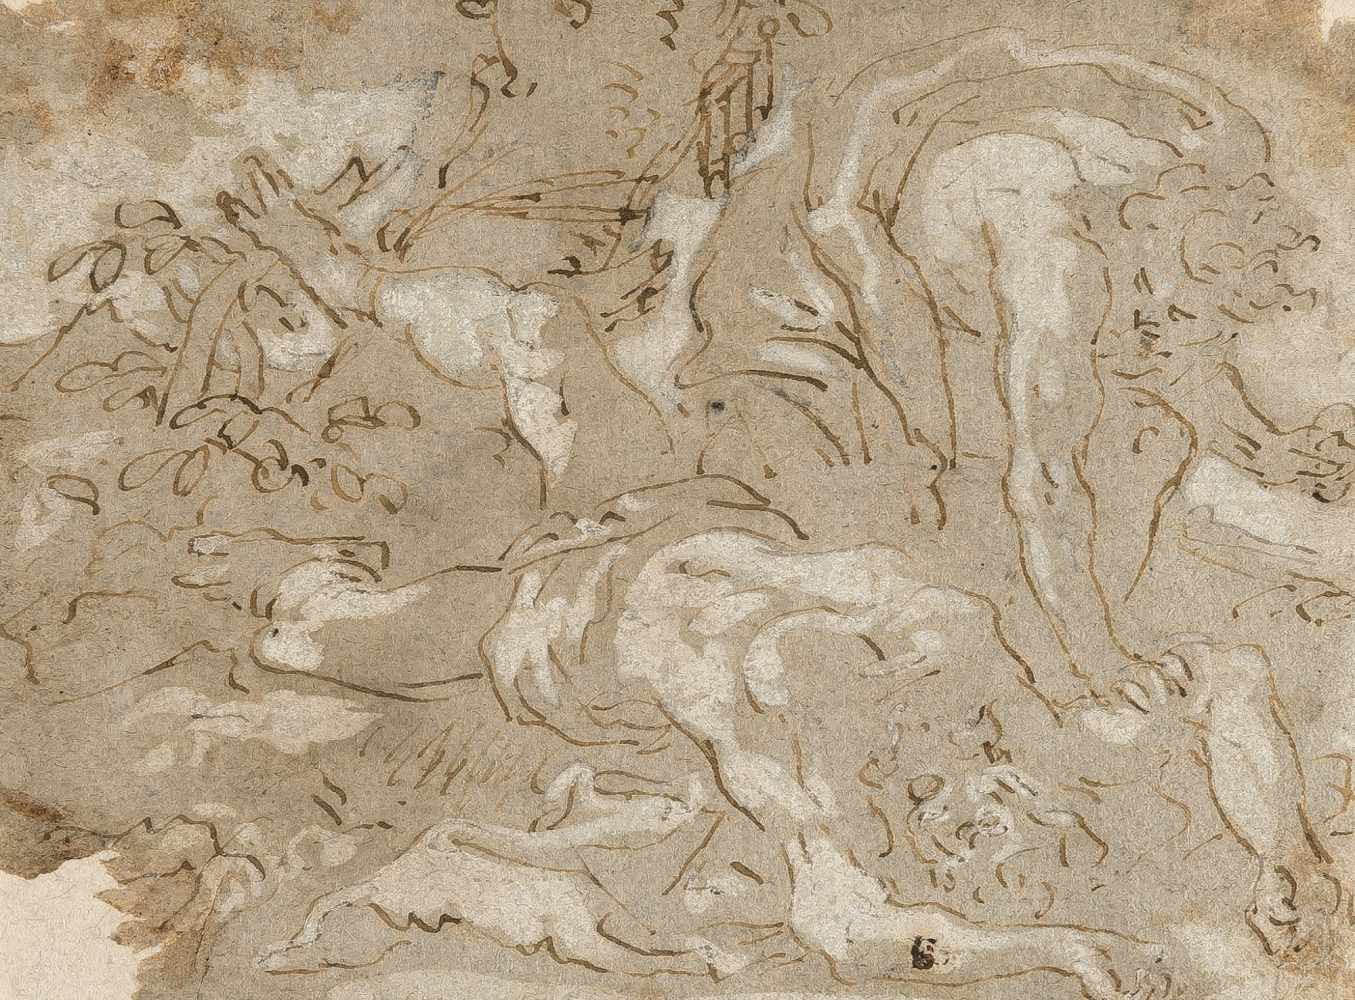 Daniel Seiter1649 Wien - Turin 1705Schindung des Marsyas durch ApollFeder in Braun, weiß gehöht, auf